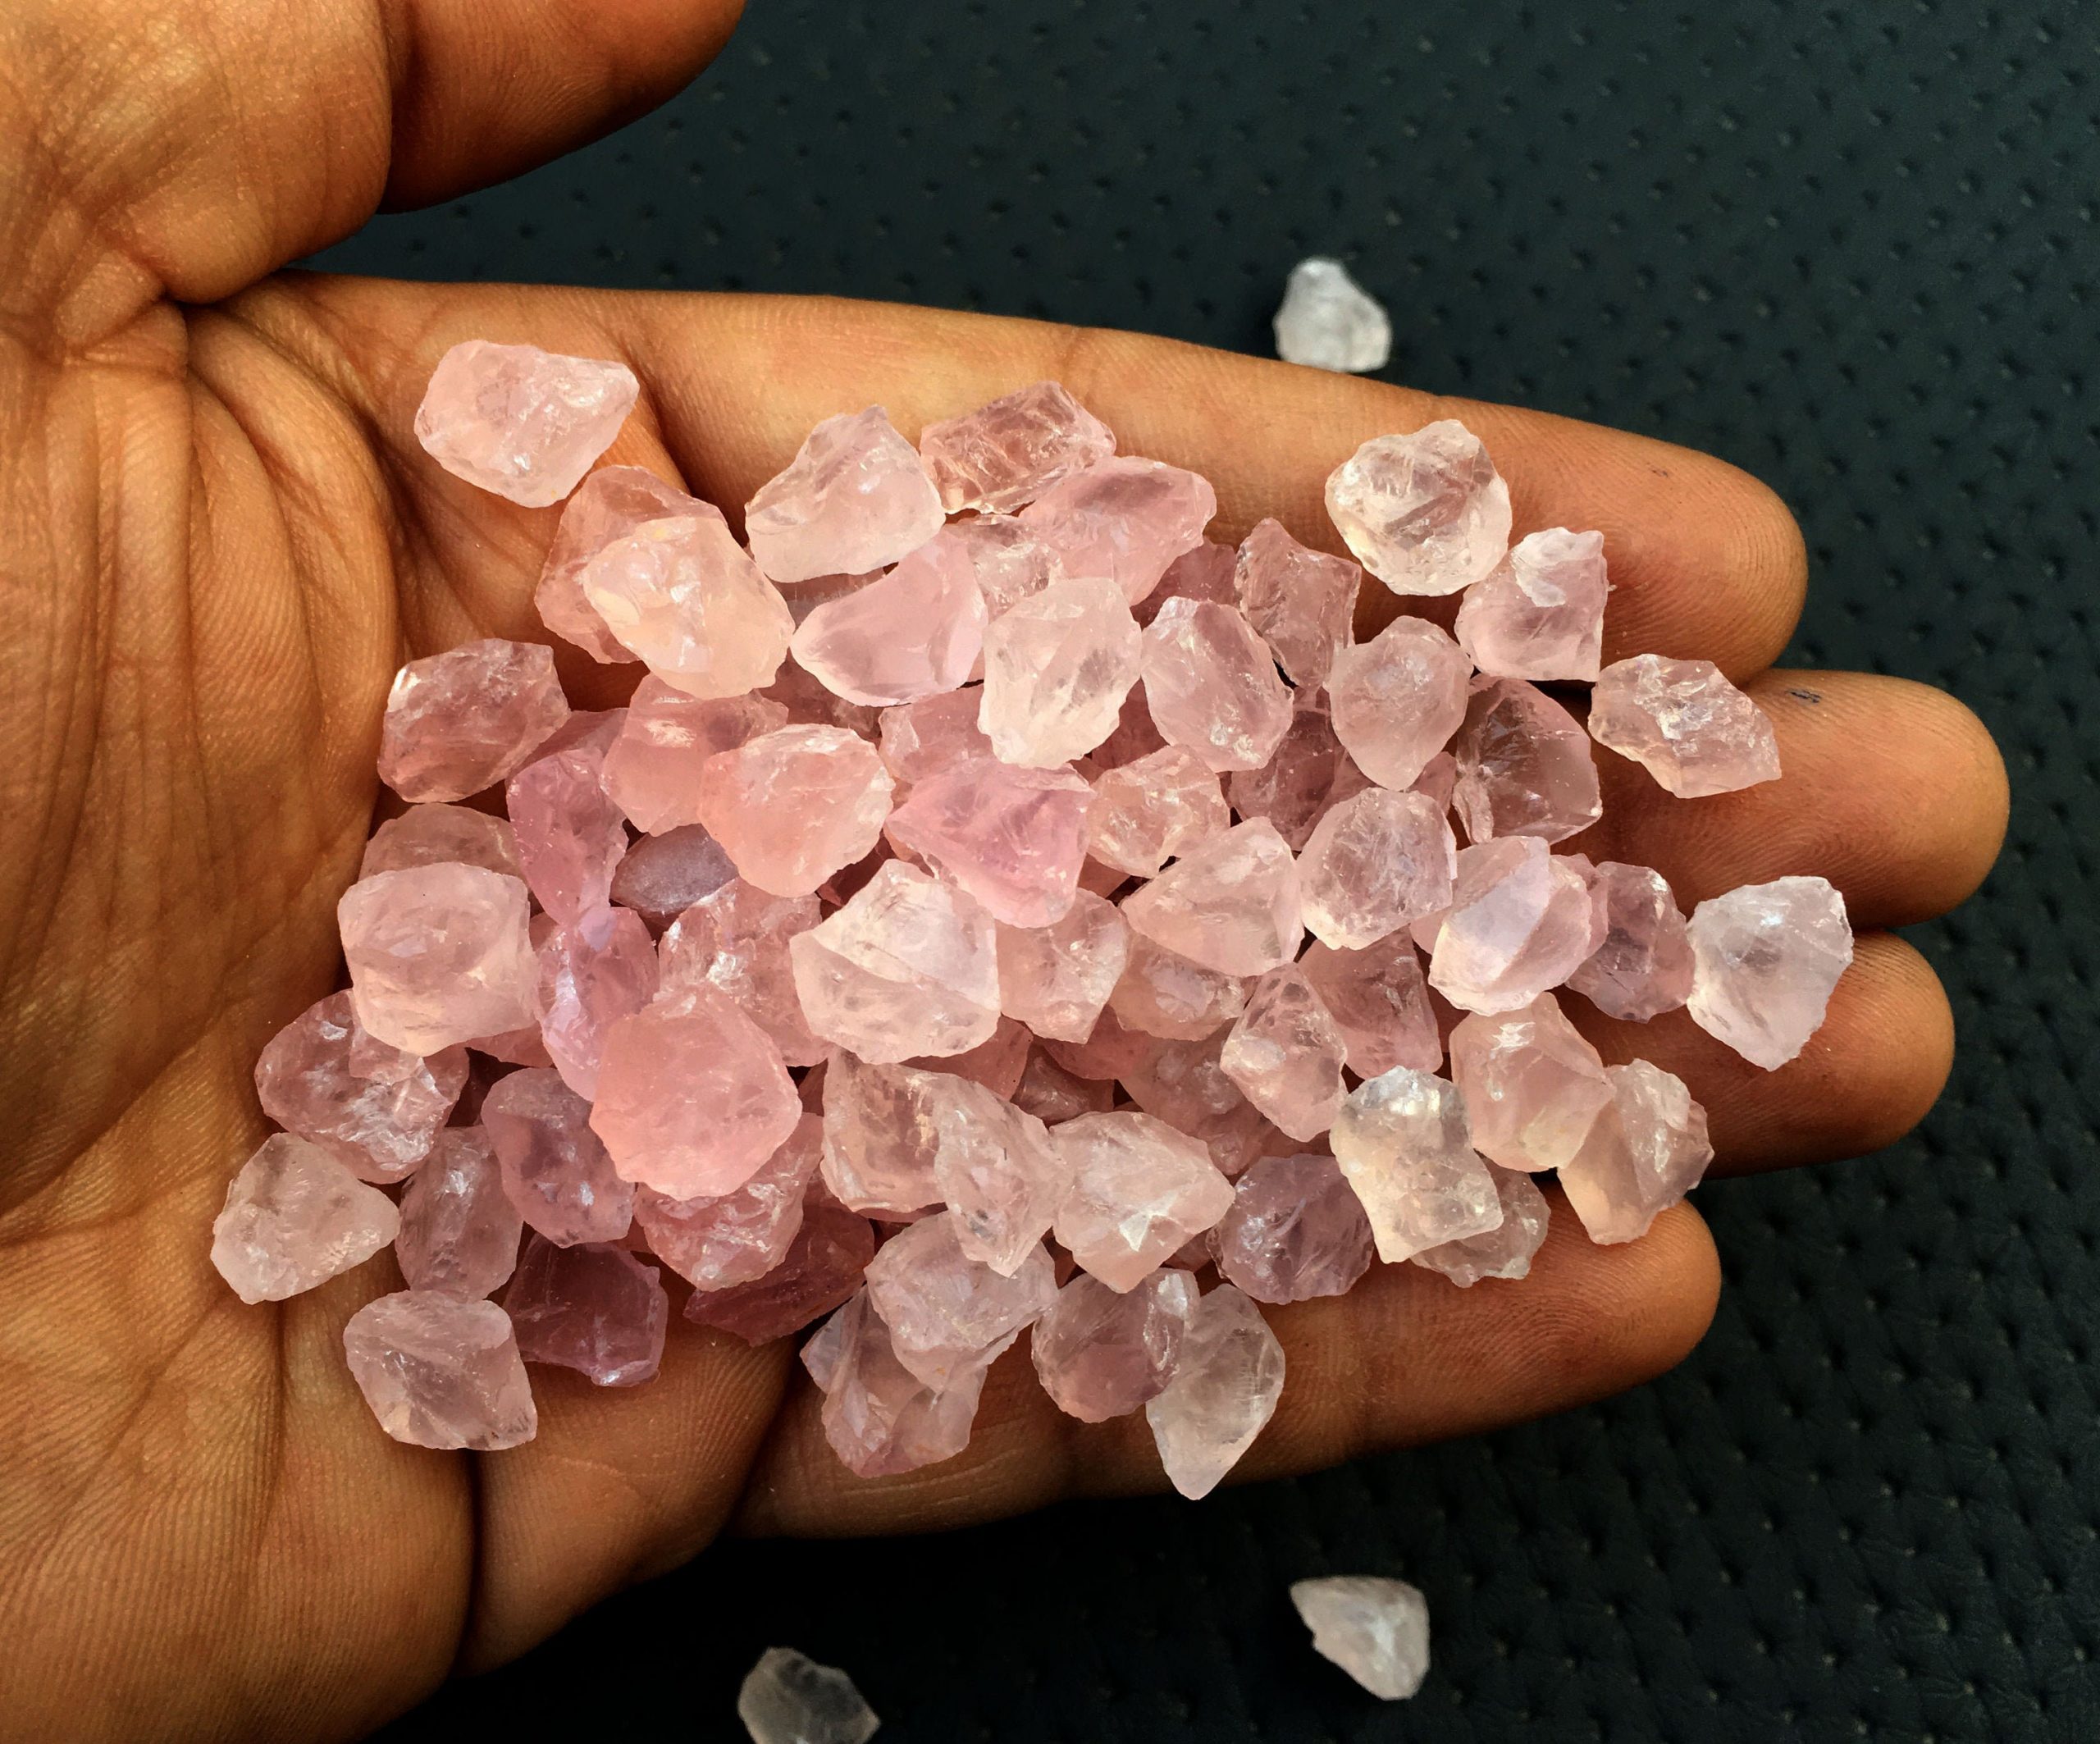 25 Pieces Pink Gemstone Rough,size 8-10 Mm Natural Rose Quartz Rough Stones,genuine Quality Rose Quartz Rough,making Pink Quartz Jewelry